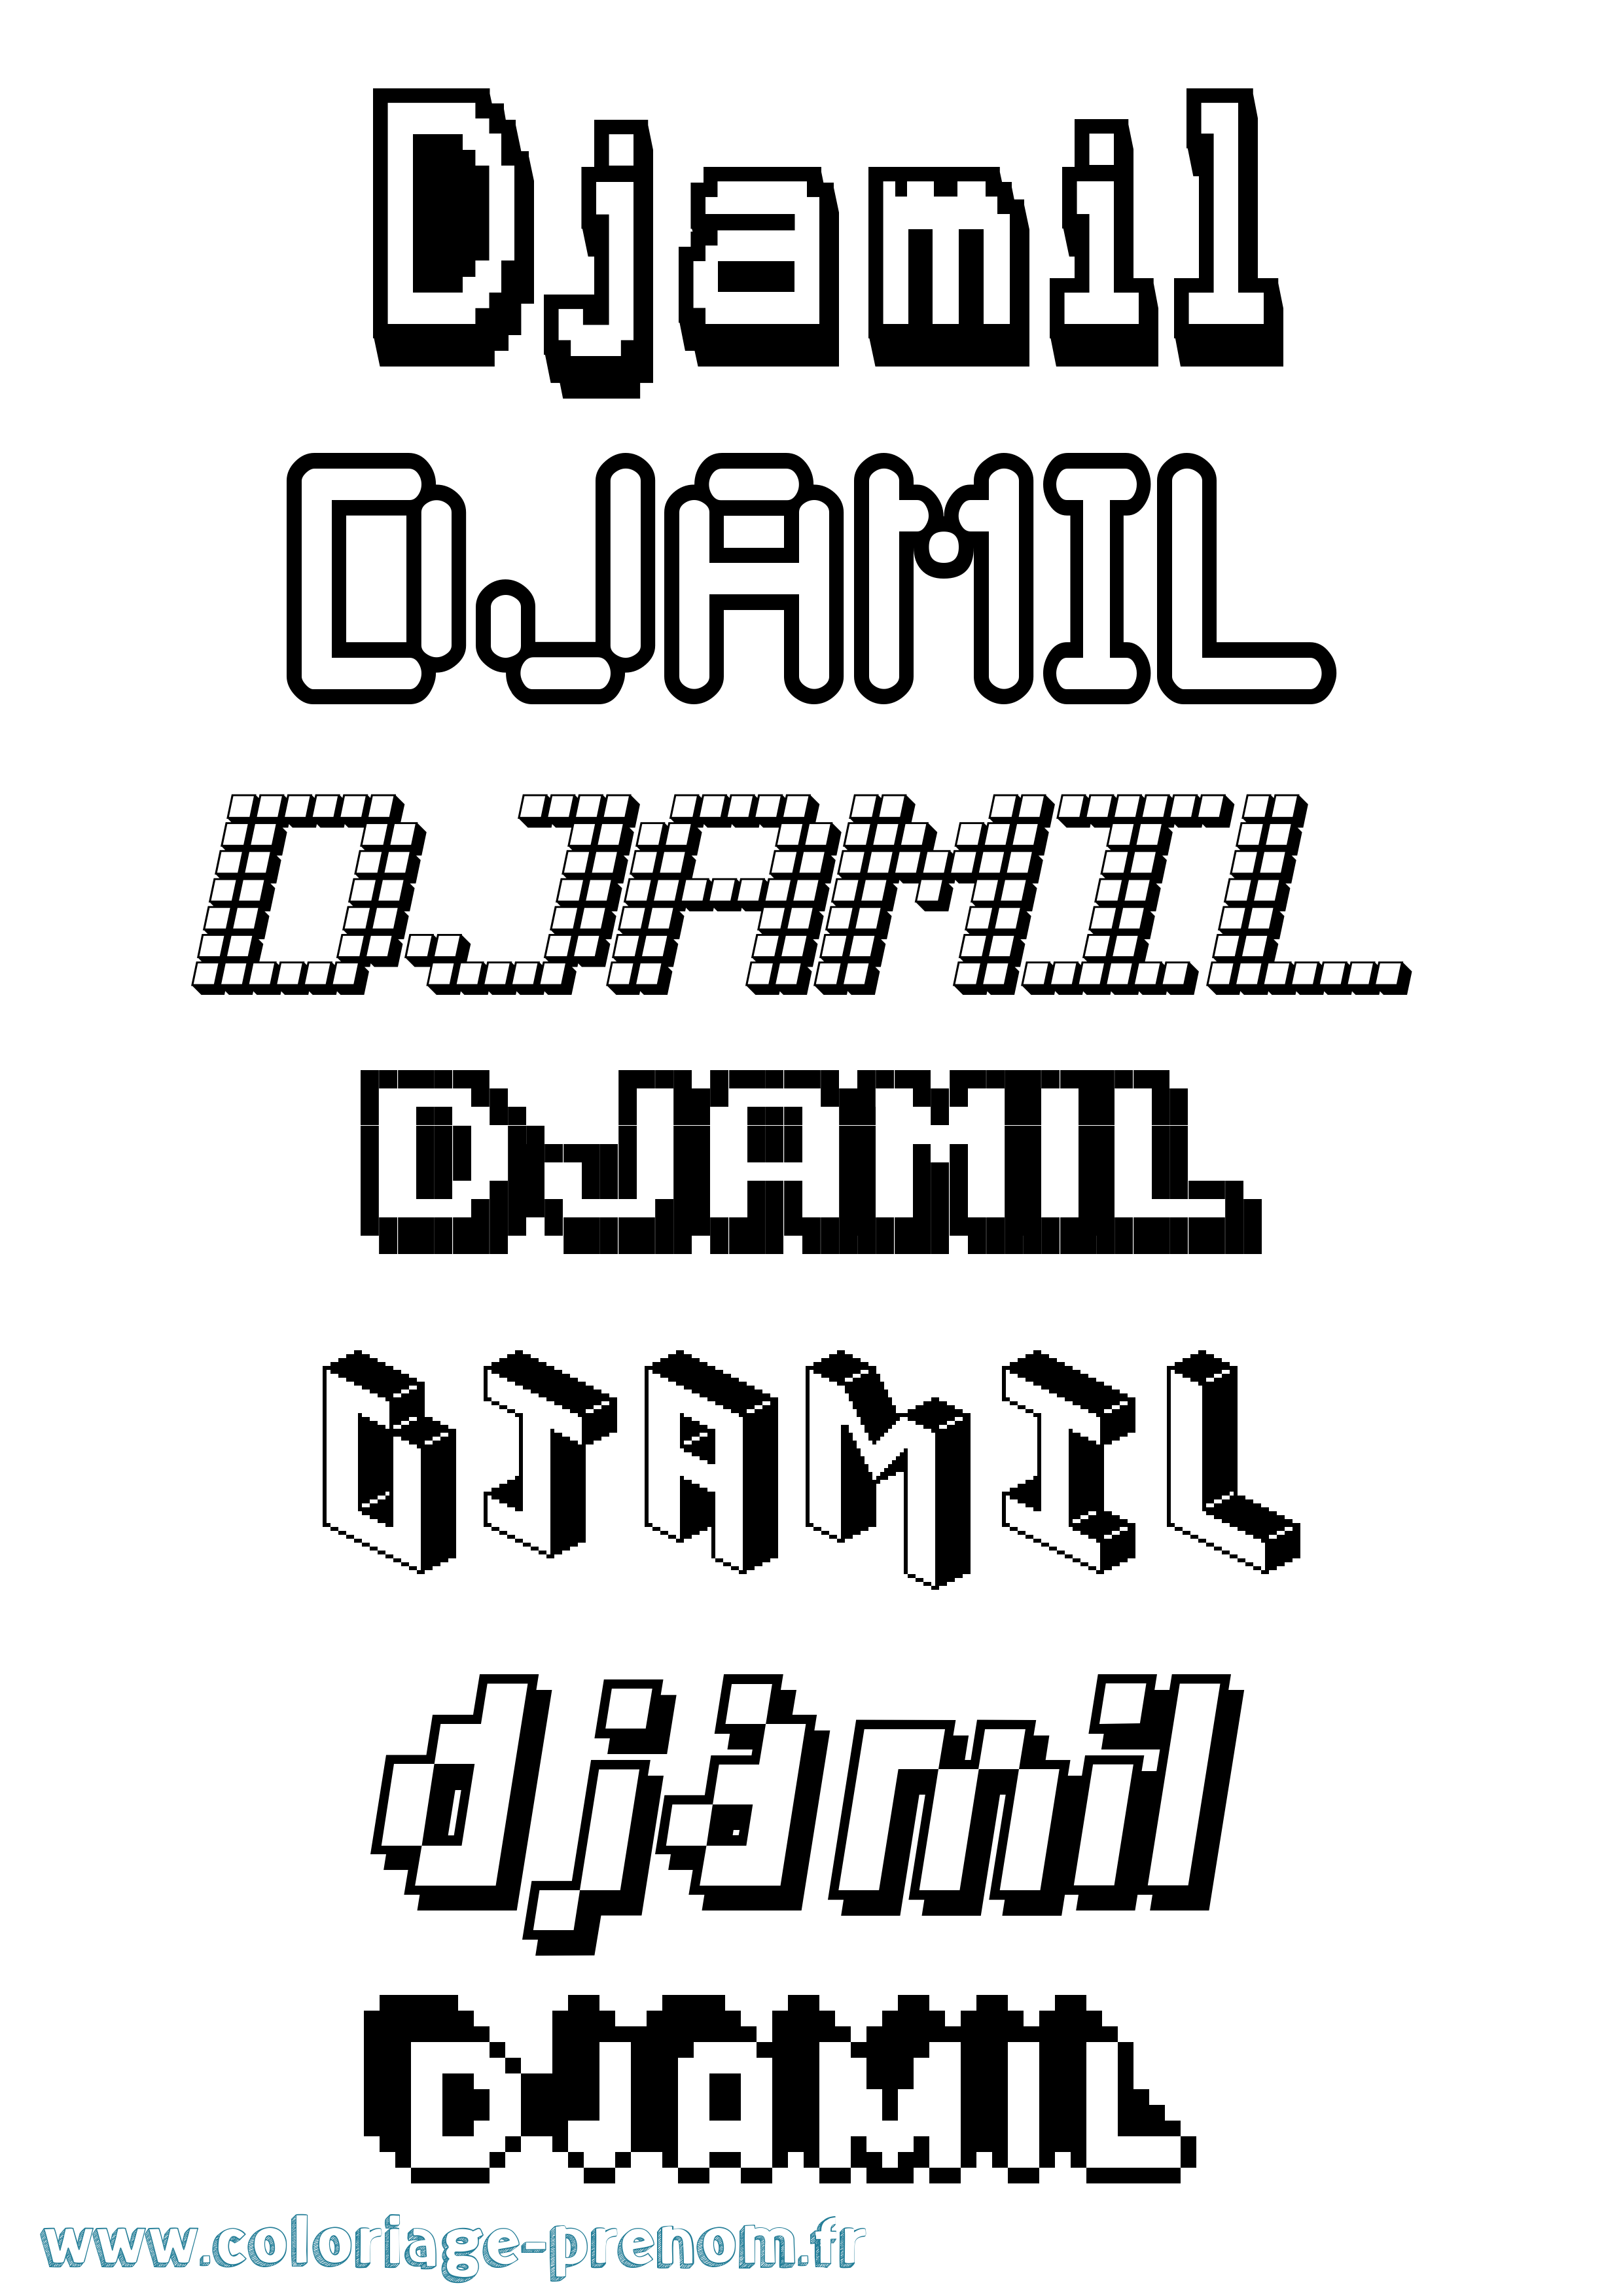 Coloriage prénom Djamil Pixel